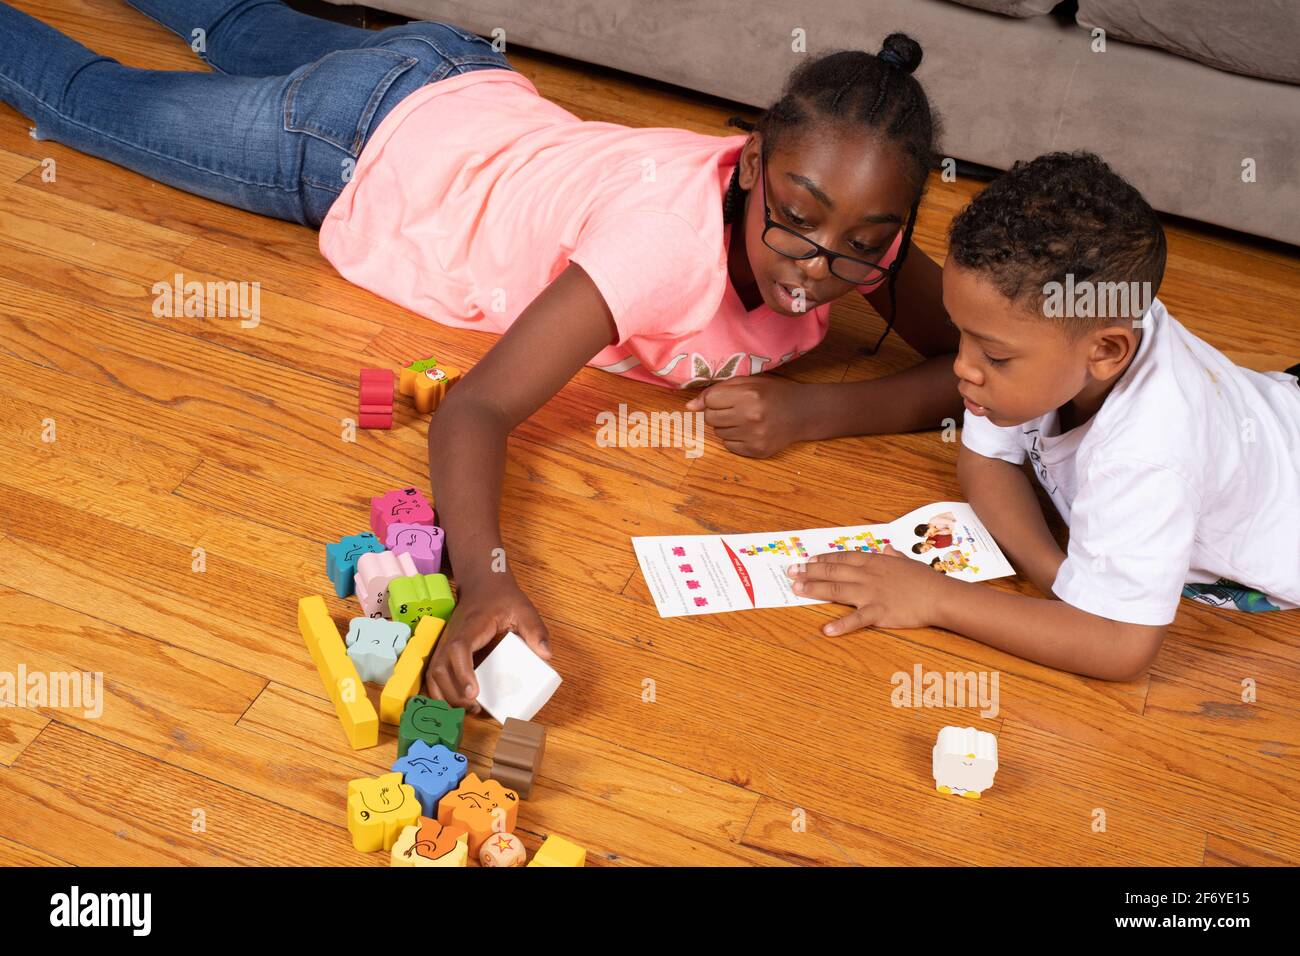 Mädchen, 11 Jahre alt, schaut mit ihrem 6-jährigen Bruder nach neuen Spielrichtungen Stockfoto